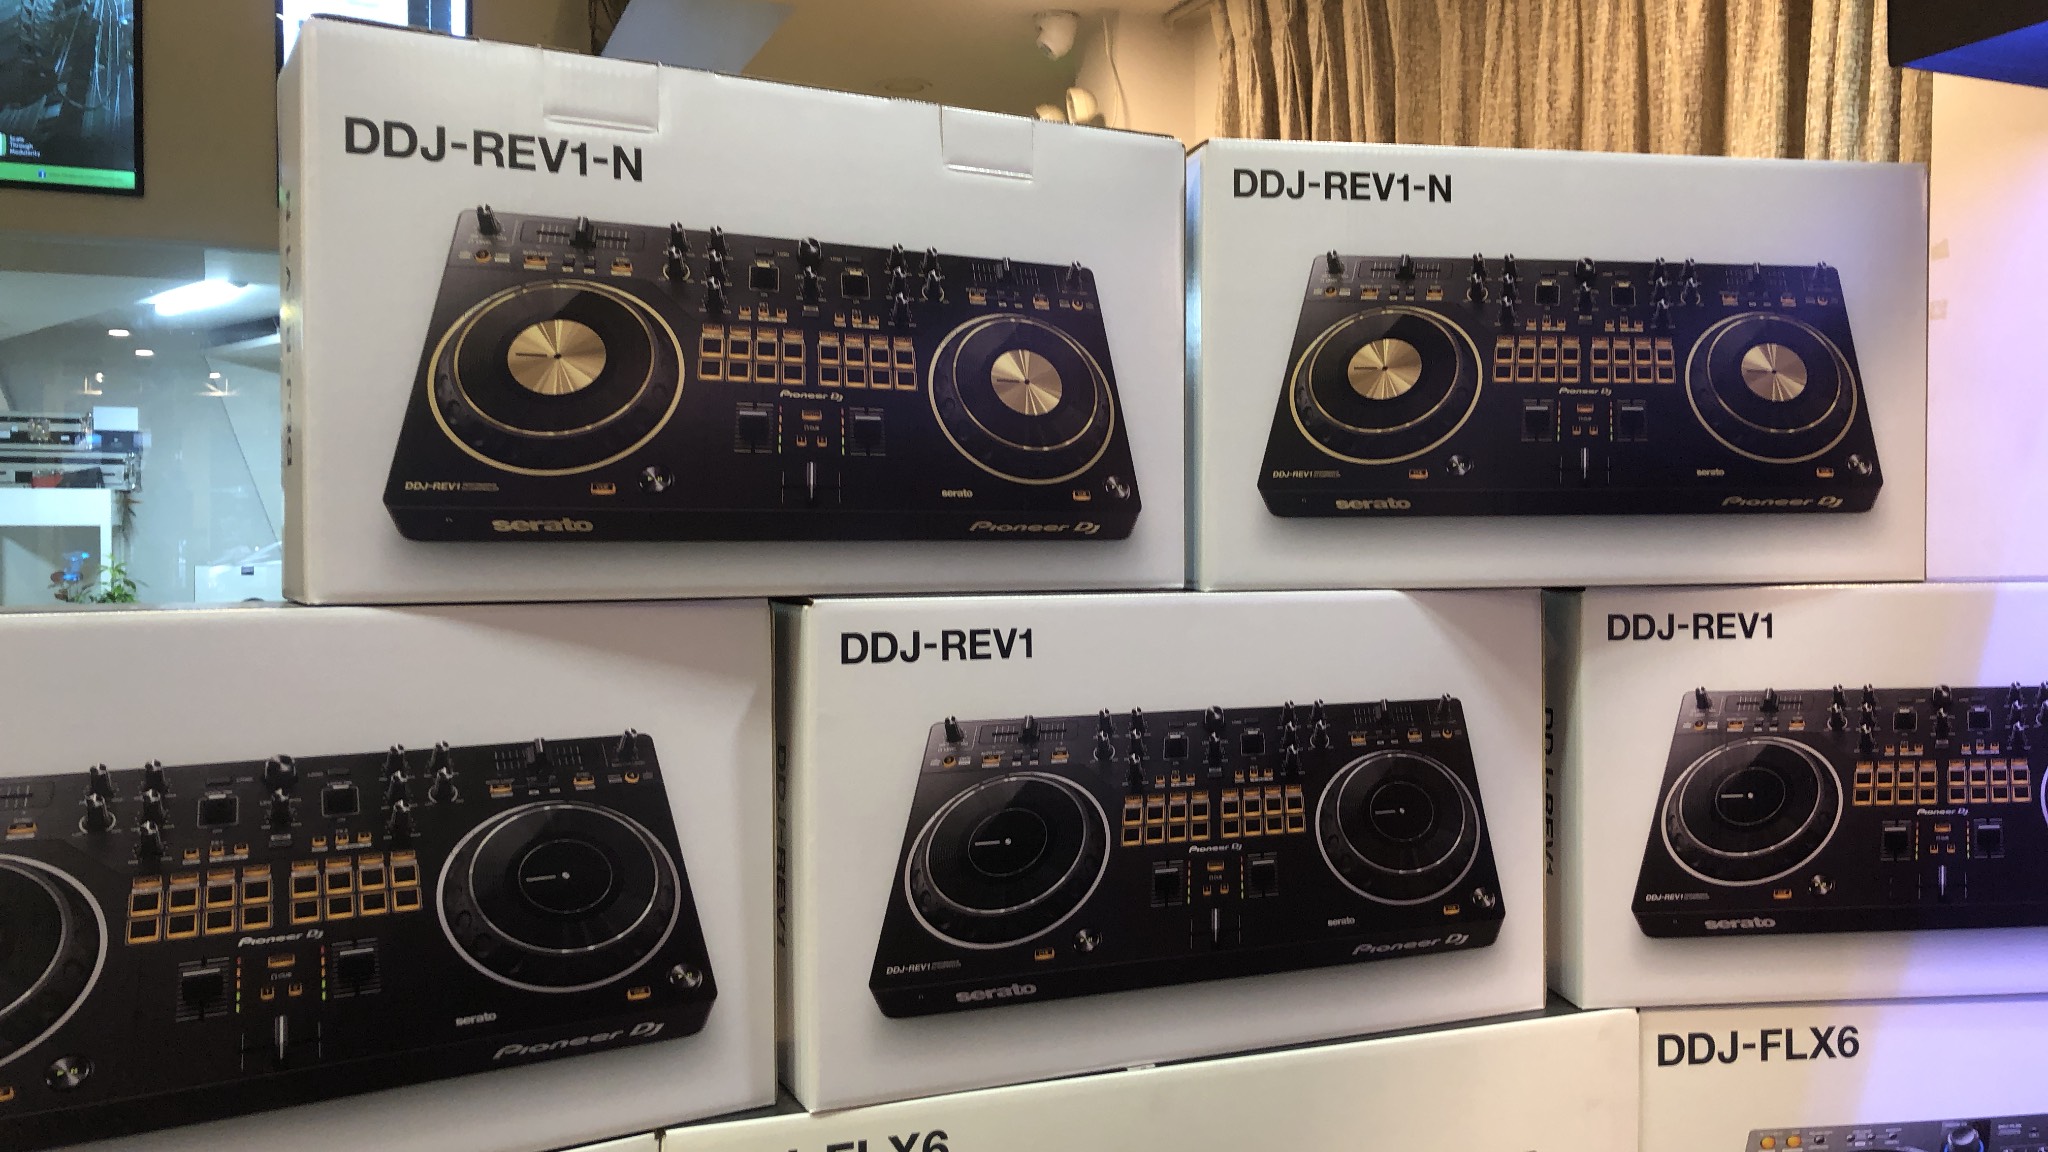 Máy DJ Controller 2 kênh sử dụng Serato  DJ  DDJ REV1 phiên bản viền vàng Pioneer  - Hàng chính hãng